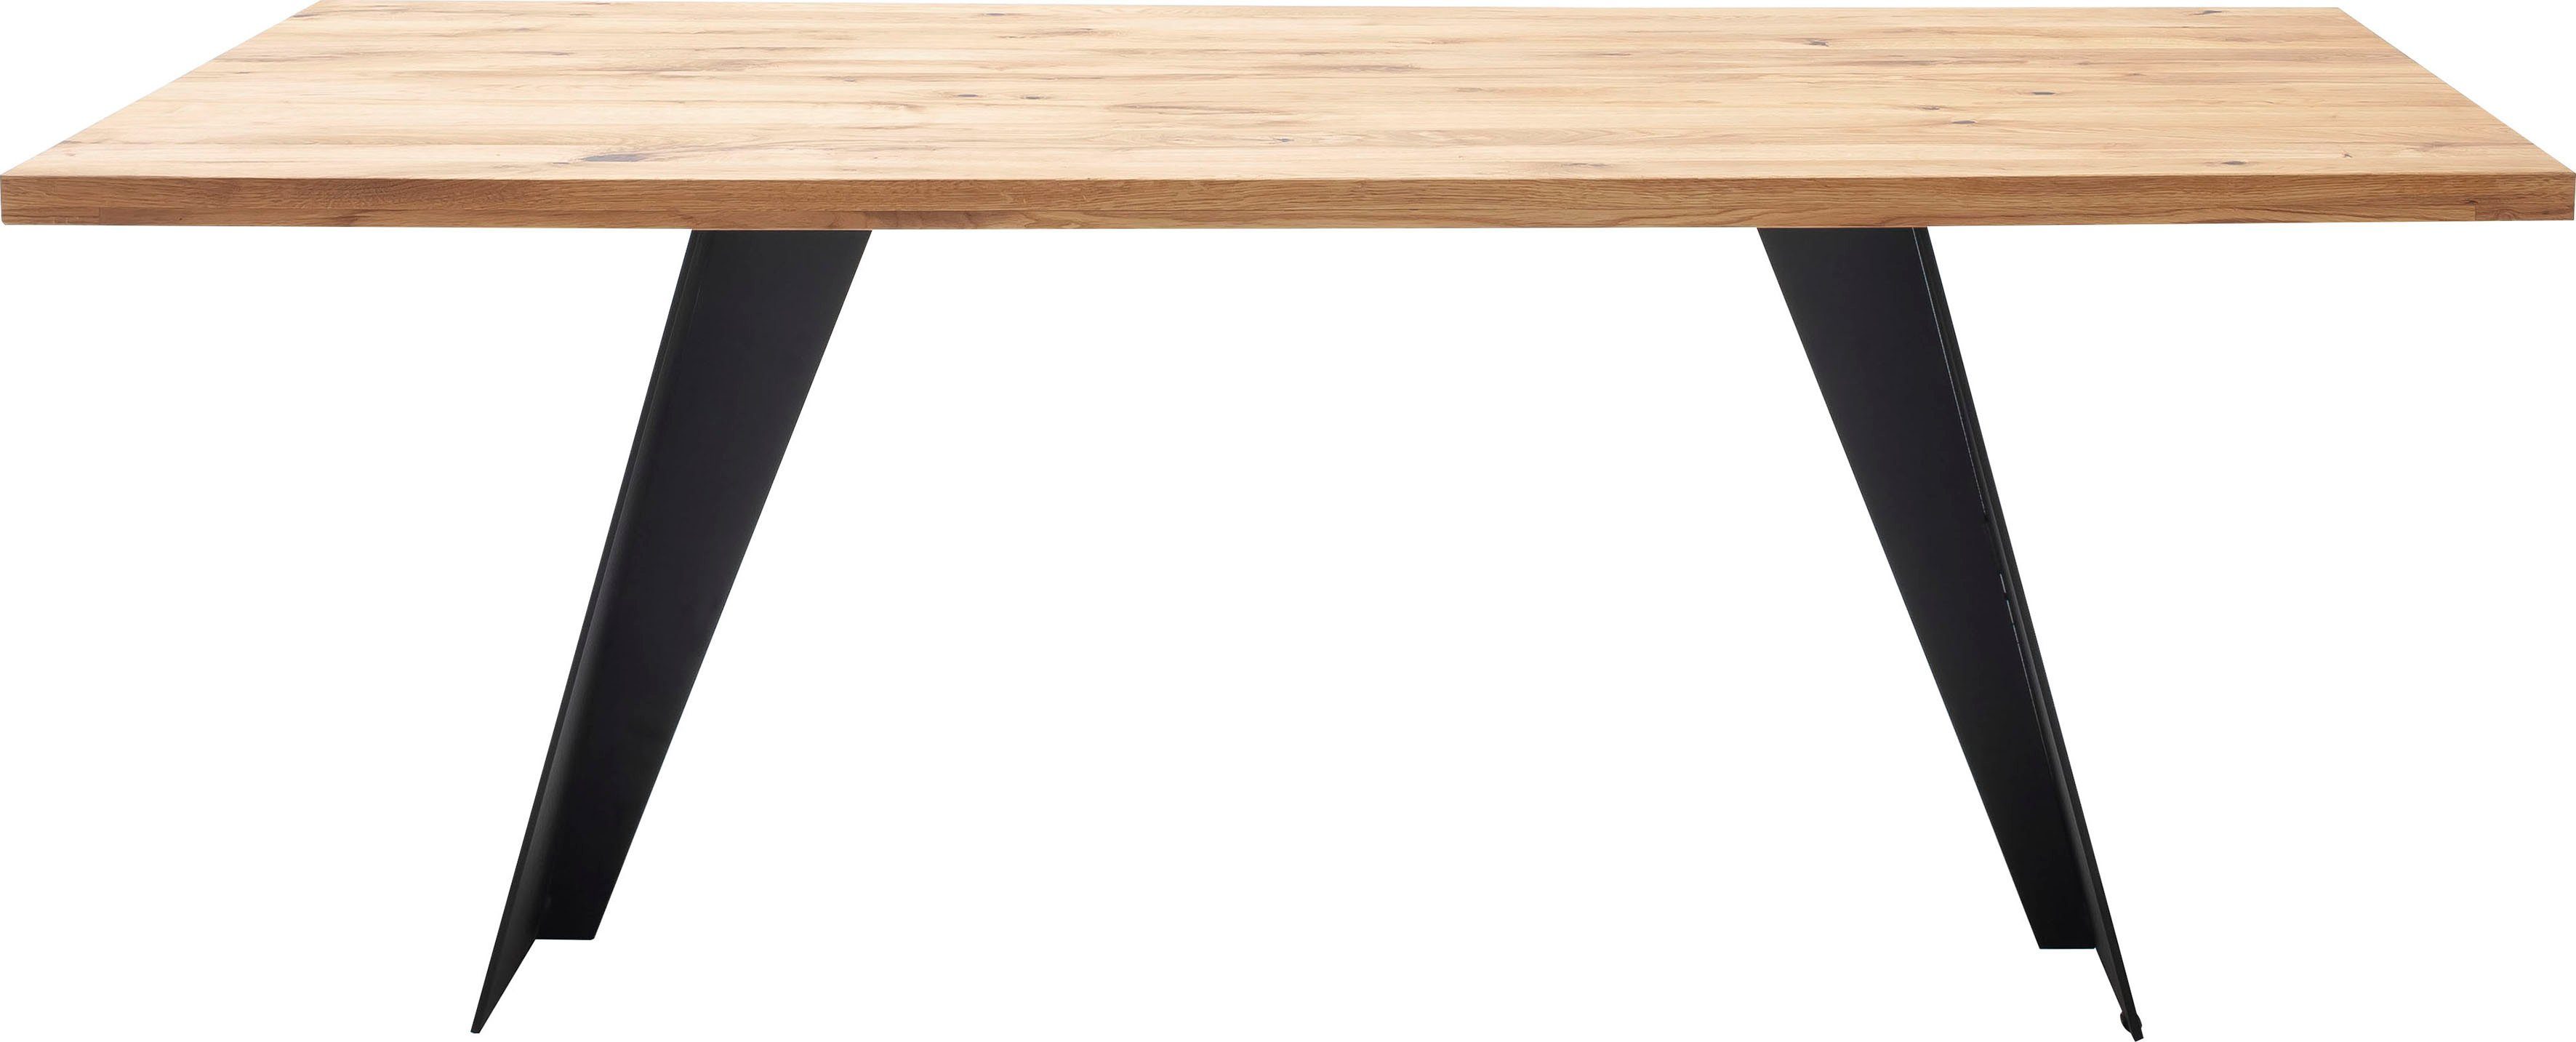 MCA furniture Esstisch Goa, Massivholz Tisch, Esstisch in Wildeiche Massiv  FSC-Zertifiziert, Tischplatte aufgedoppelt ca. 4 cm mit gerader Kante | Esstische